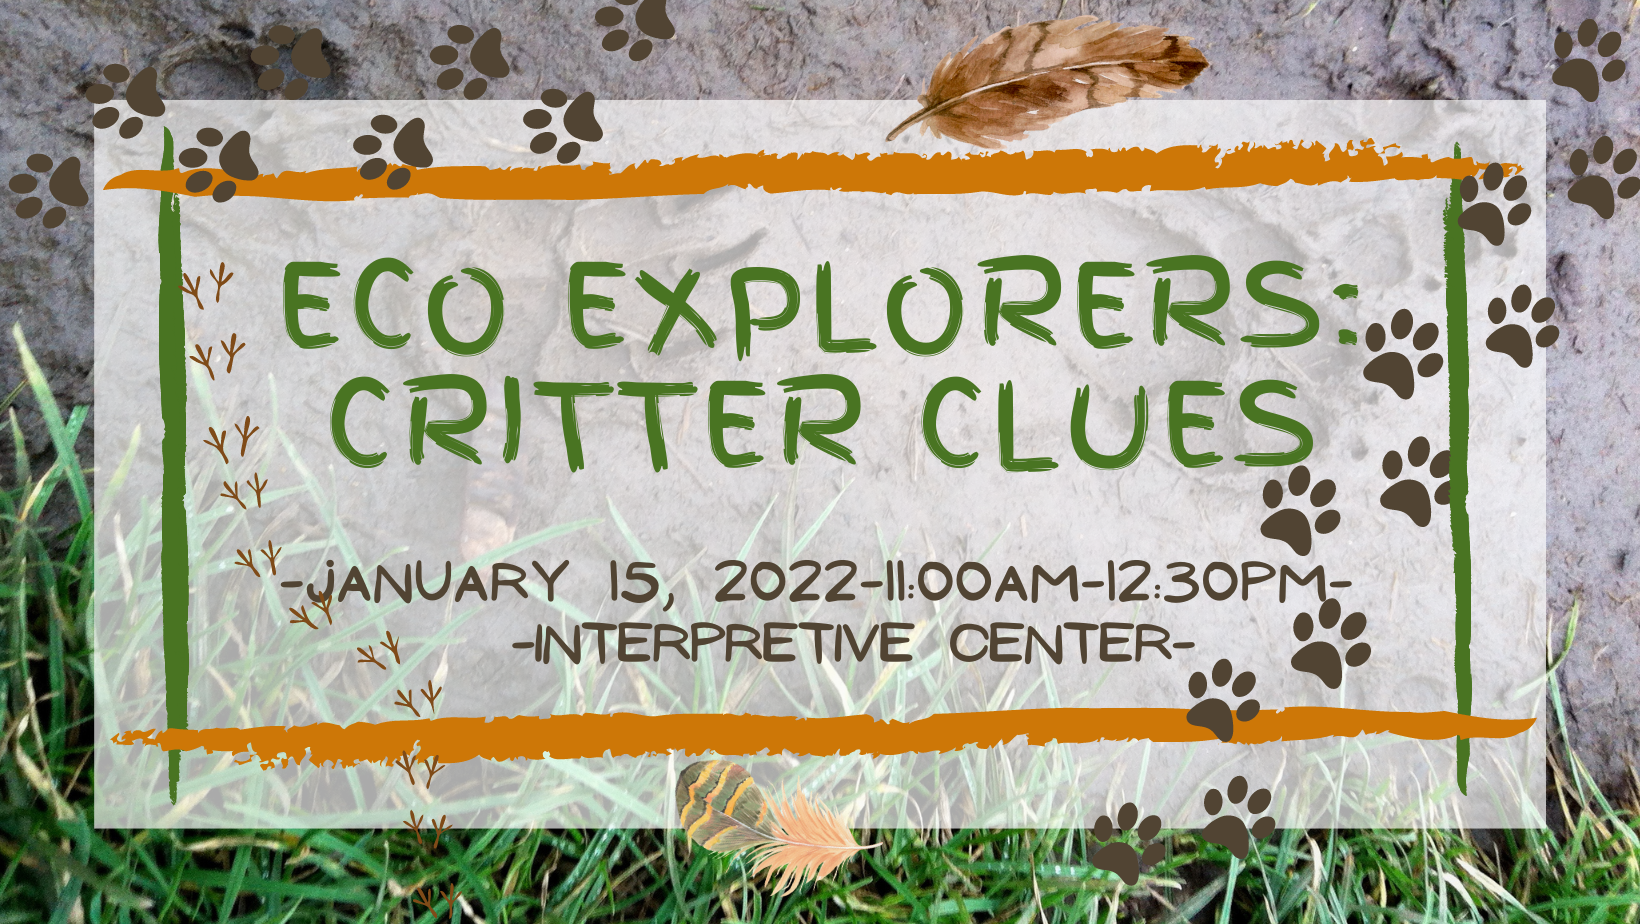 CSP2022Eco Explorers: Critter Clues